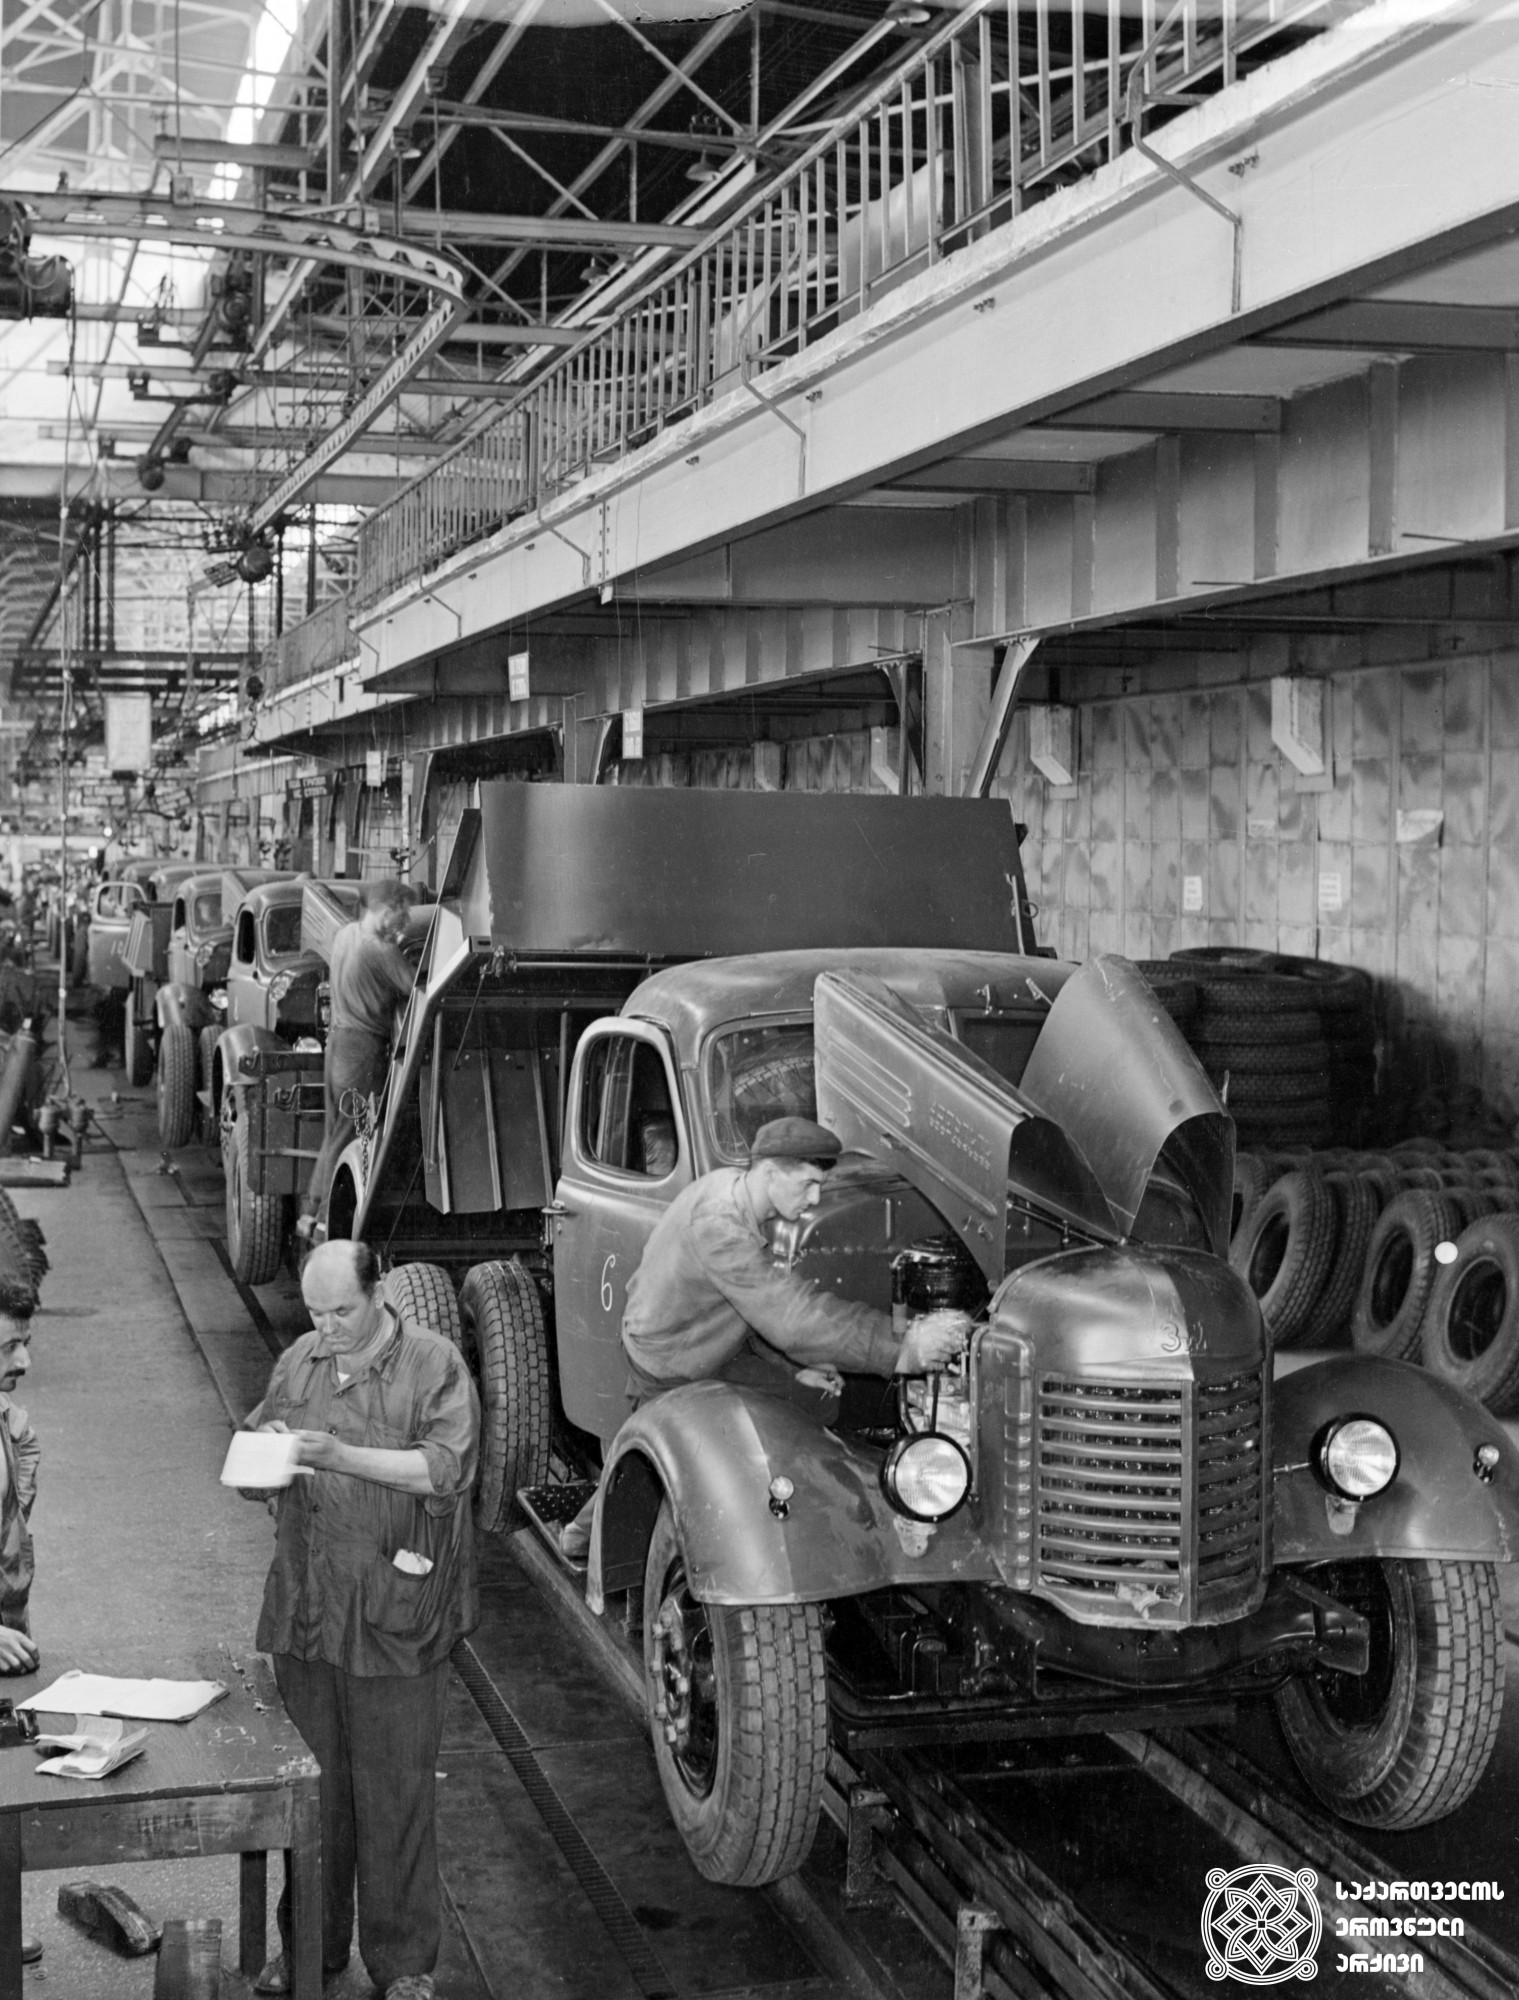 ქუთაისის ორჯონიკიძის სახელობის საავტომობილო ქარხნის მთავარი კონვეიერი.  1957 წელი. <br>
Chief Conveyor of Kutaisi Orjonikidze Automobile Plant. 1957.